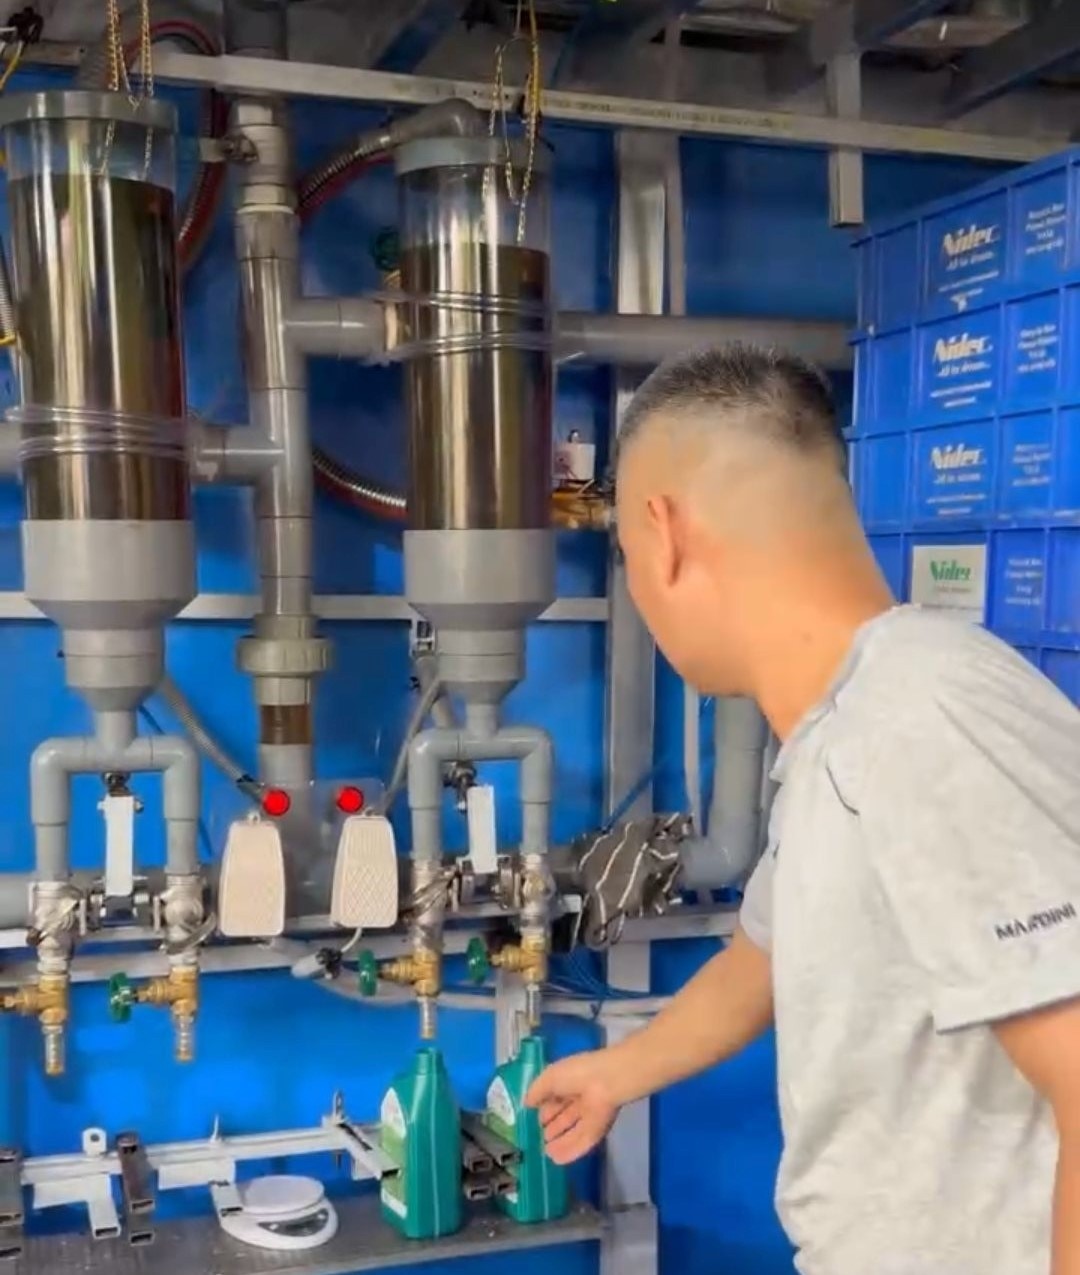 Dây chuyền sản xuất, đóng gói dầu nhờn động cơ không qua kiểm định của ông Nguyễn Văn Phương